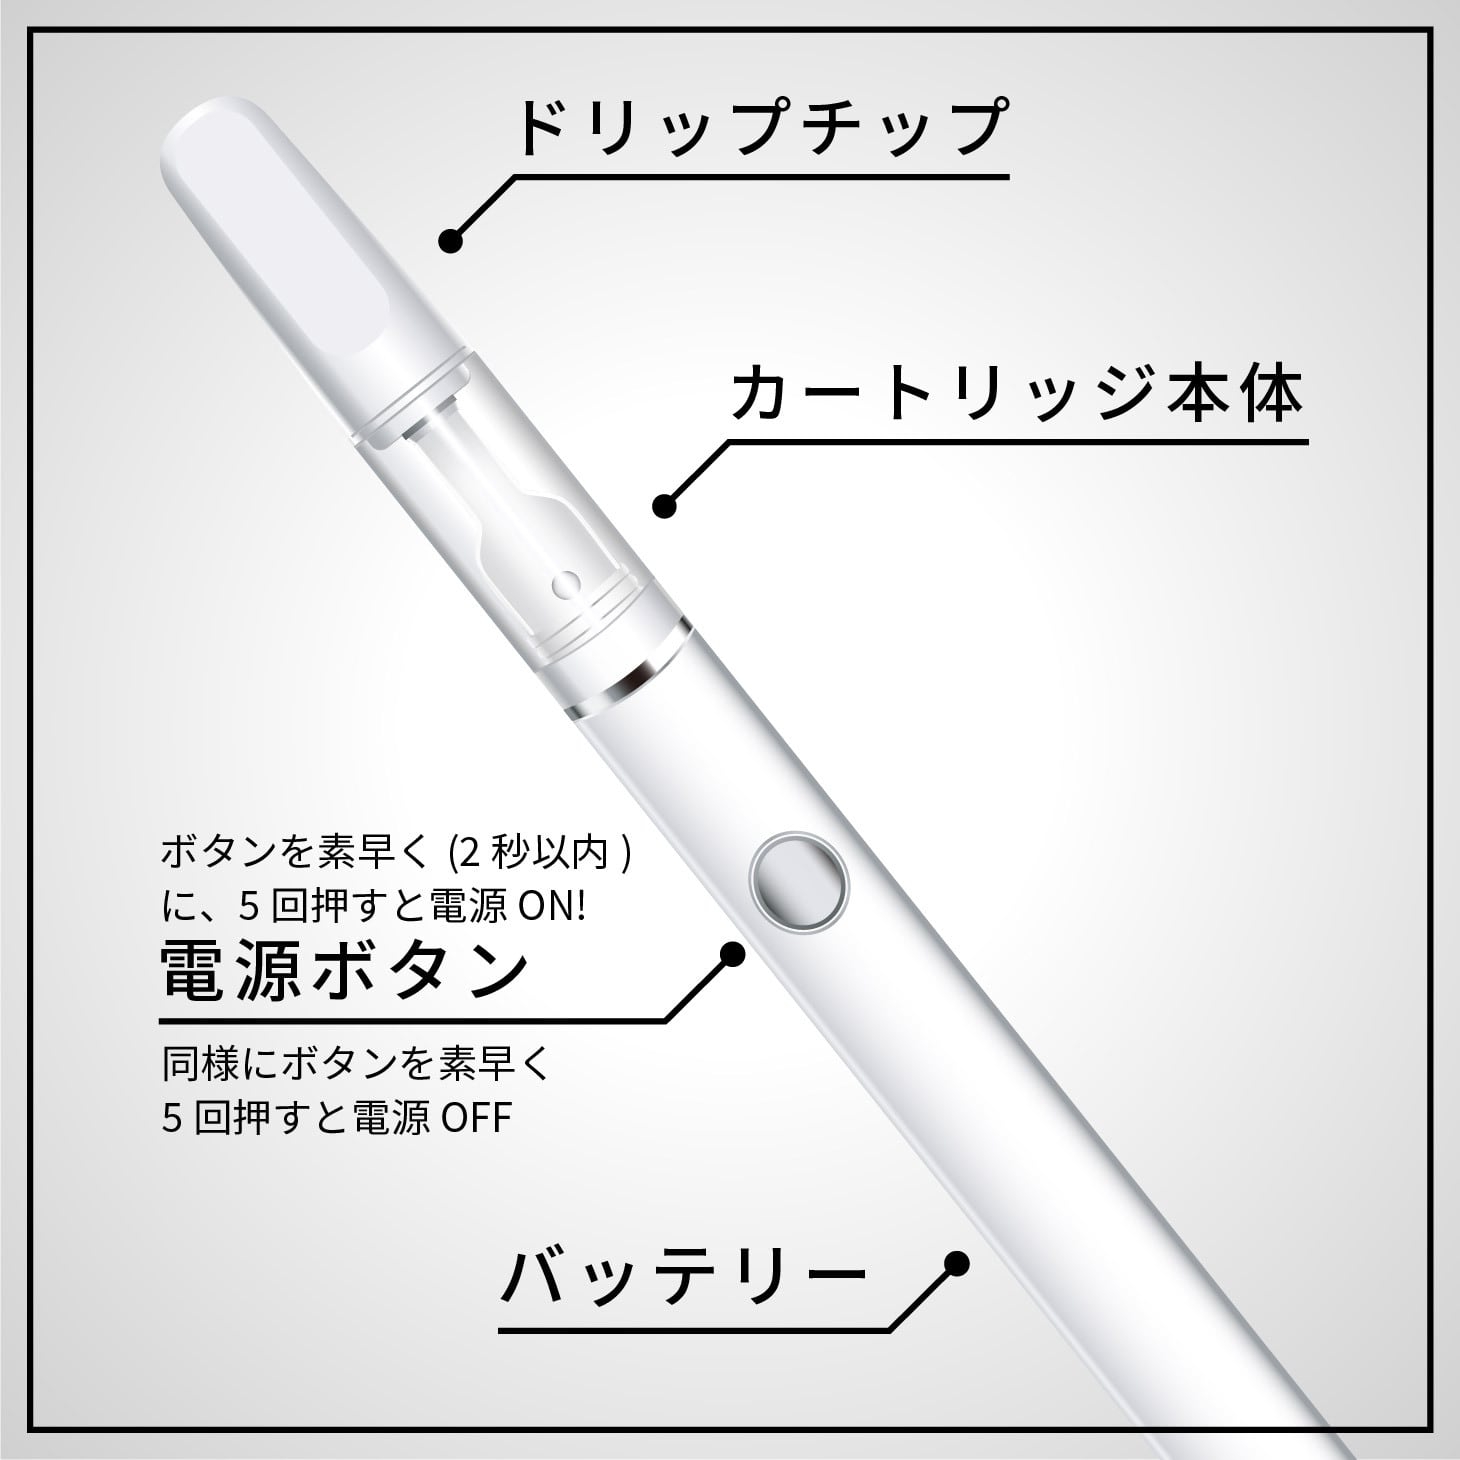 BI-SO(ビソー) テルペン スターターキットの商品画像サムネ7 